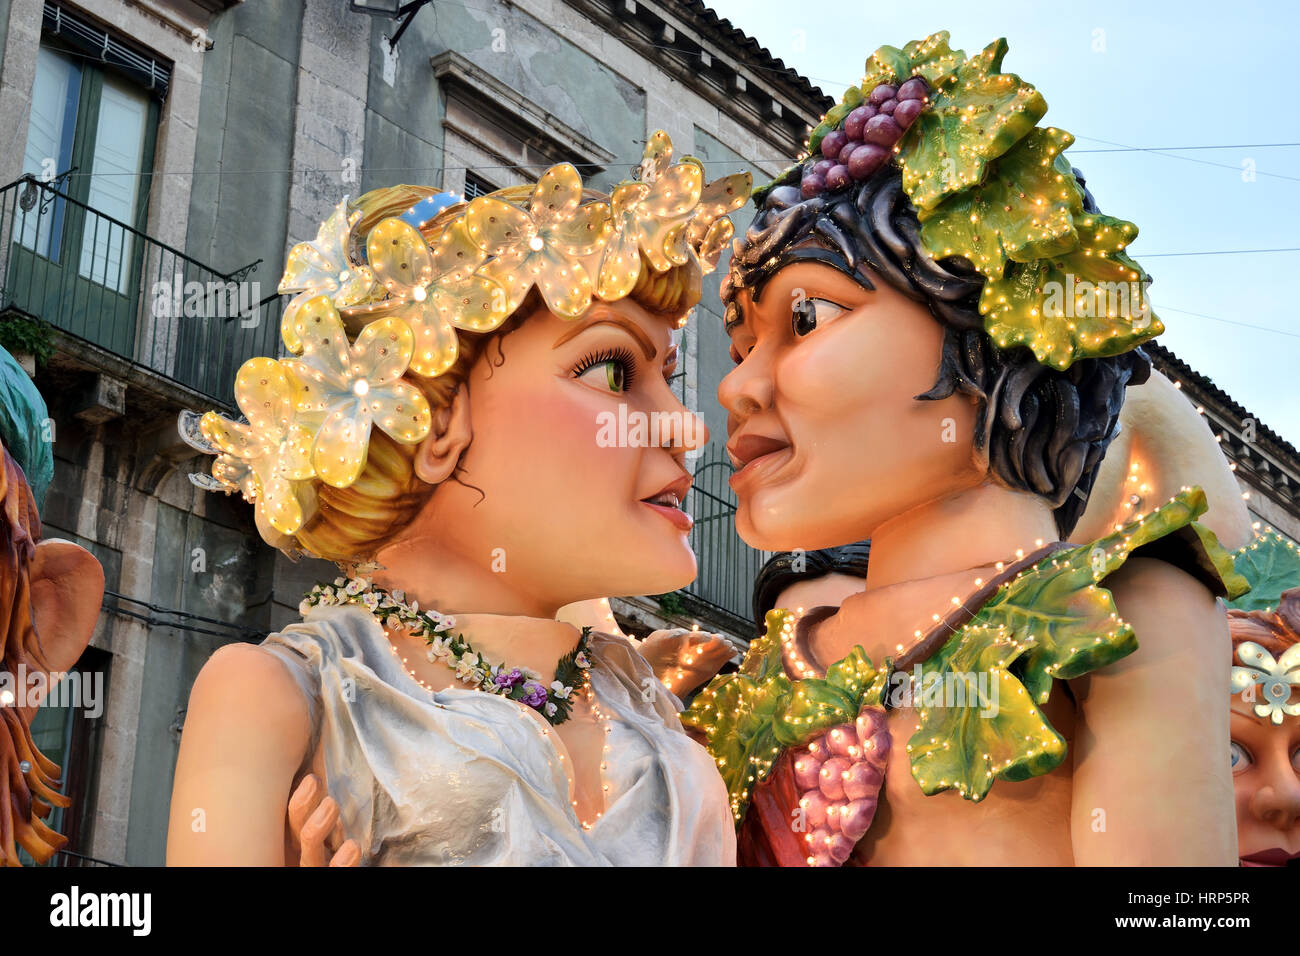 Acireale (CT), Italie - Février 28, 2017 : flotteur allégoriques représentant les deux amants mythologiques et Aci Galatea, pendant le défilé du carnaval Banque D'Images